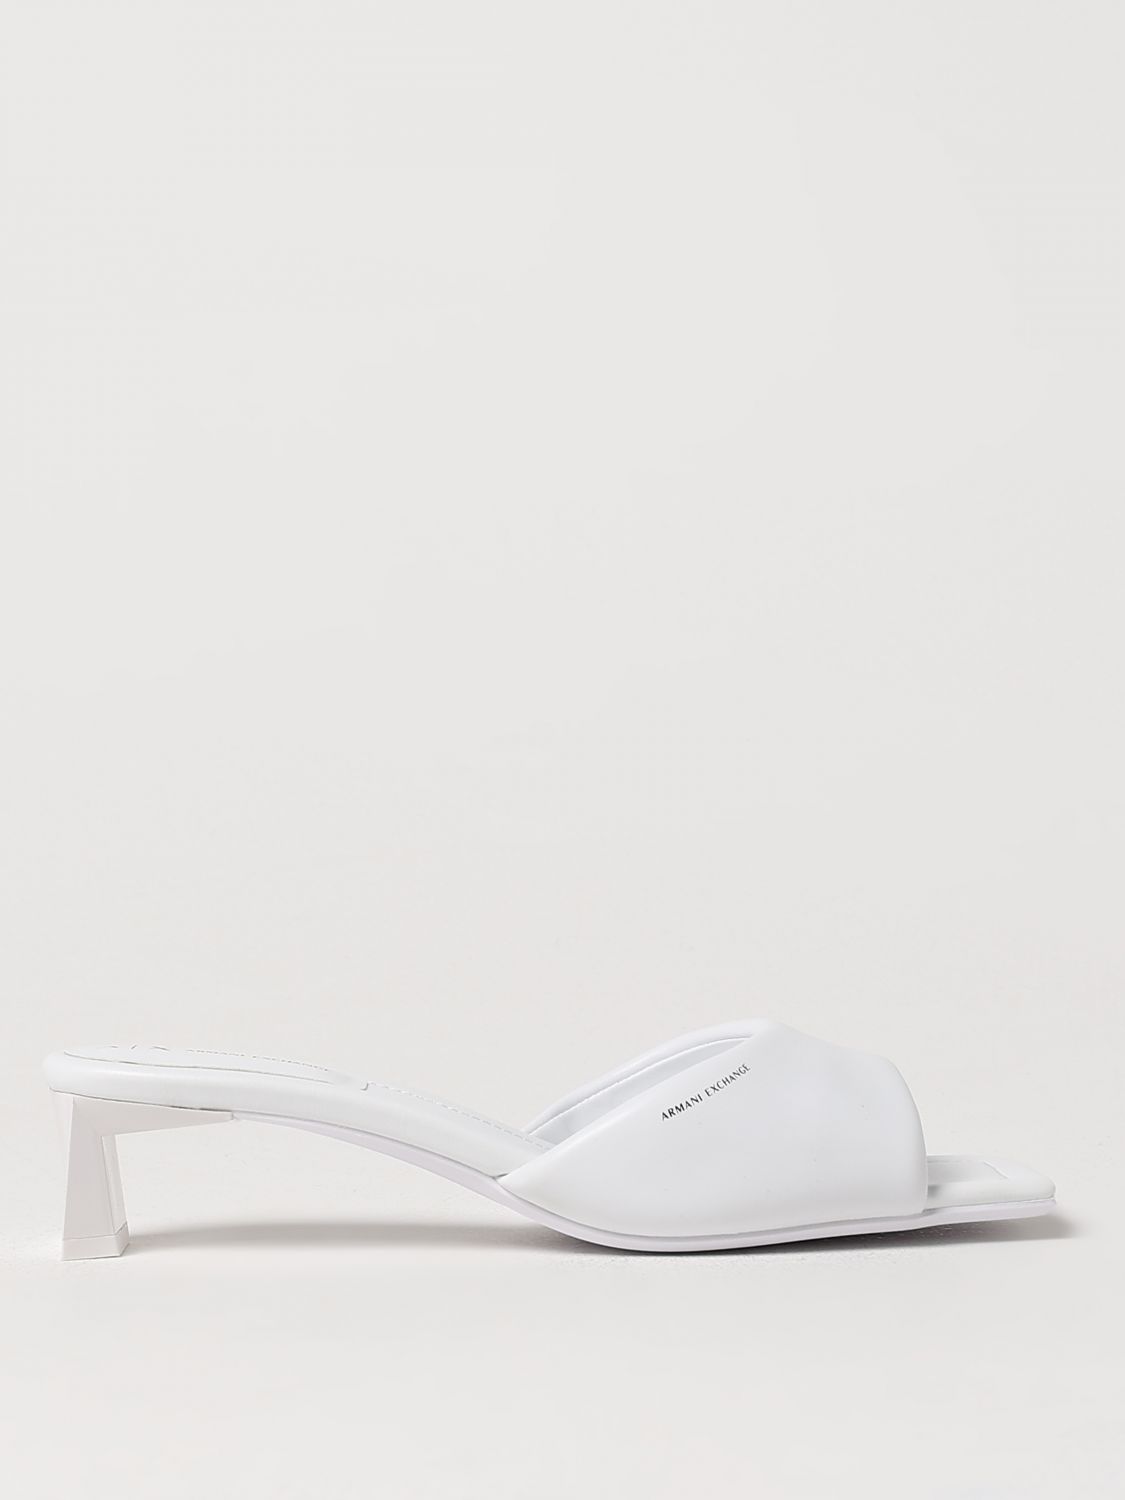 Armani Exchange Heeled Sandals ARMANI EXCHANGE Woman color White